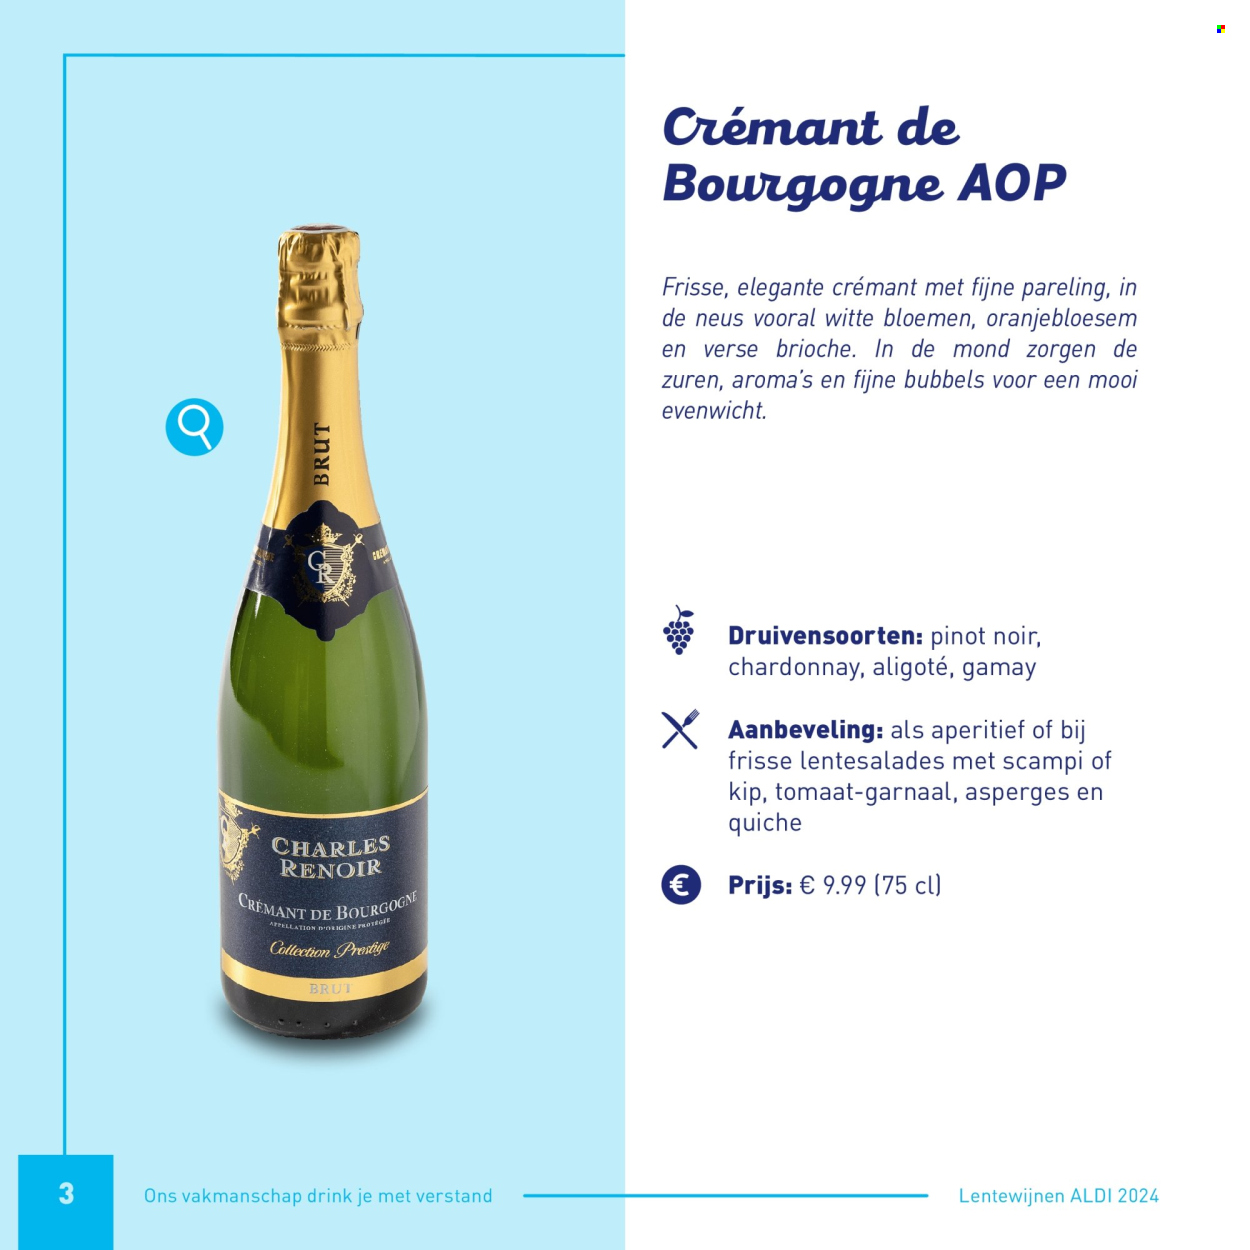 thumbnail - Catalogue ALDI - Produits soldés - asperge, brioche, quiche, vin, Crémant de Bourgogne, alcool, vin pétillant, bourgogne. Page 3.